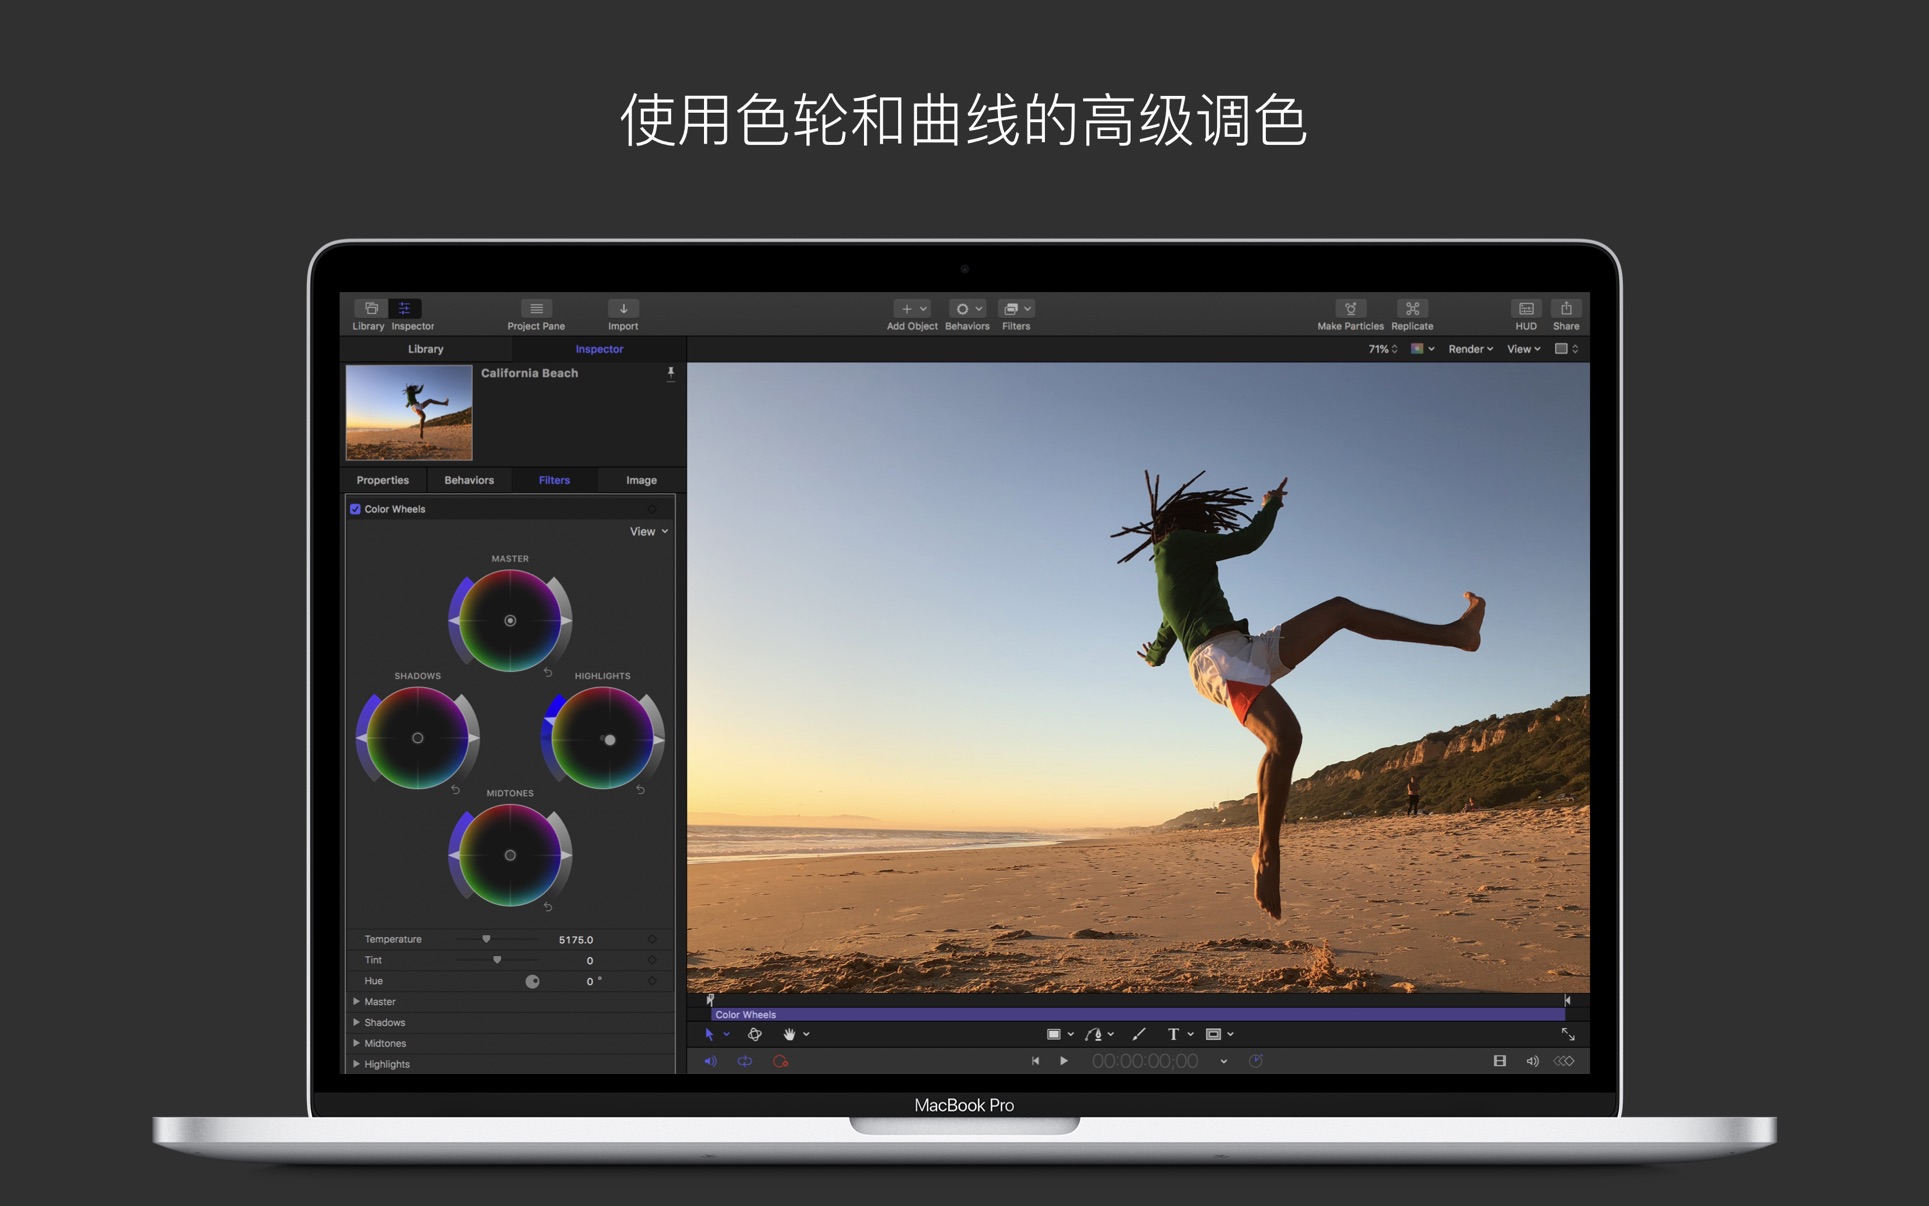 影视编辑 Motion for Mac 5.6.7 中文破解版 FinalCutPro字幕、转场和效果特效软件